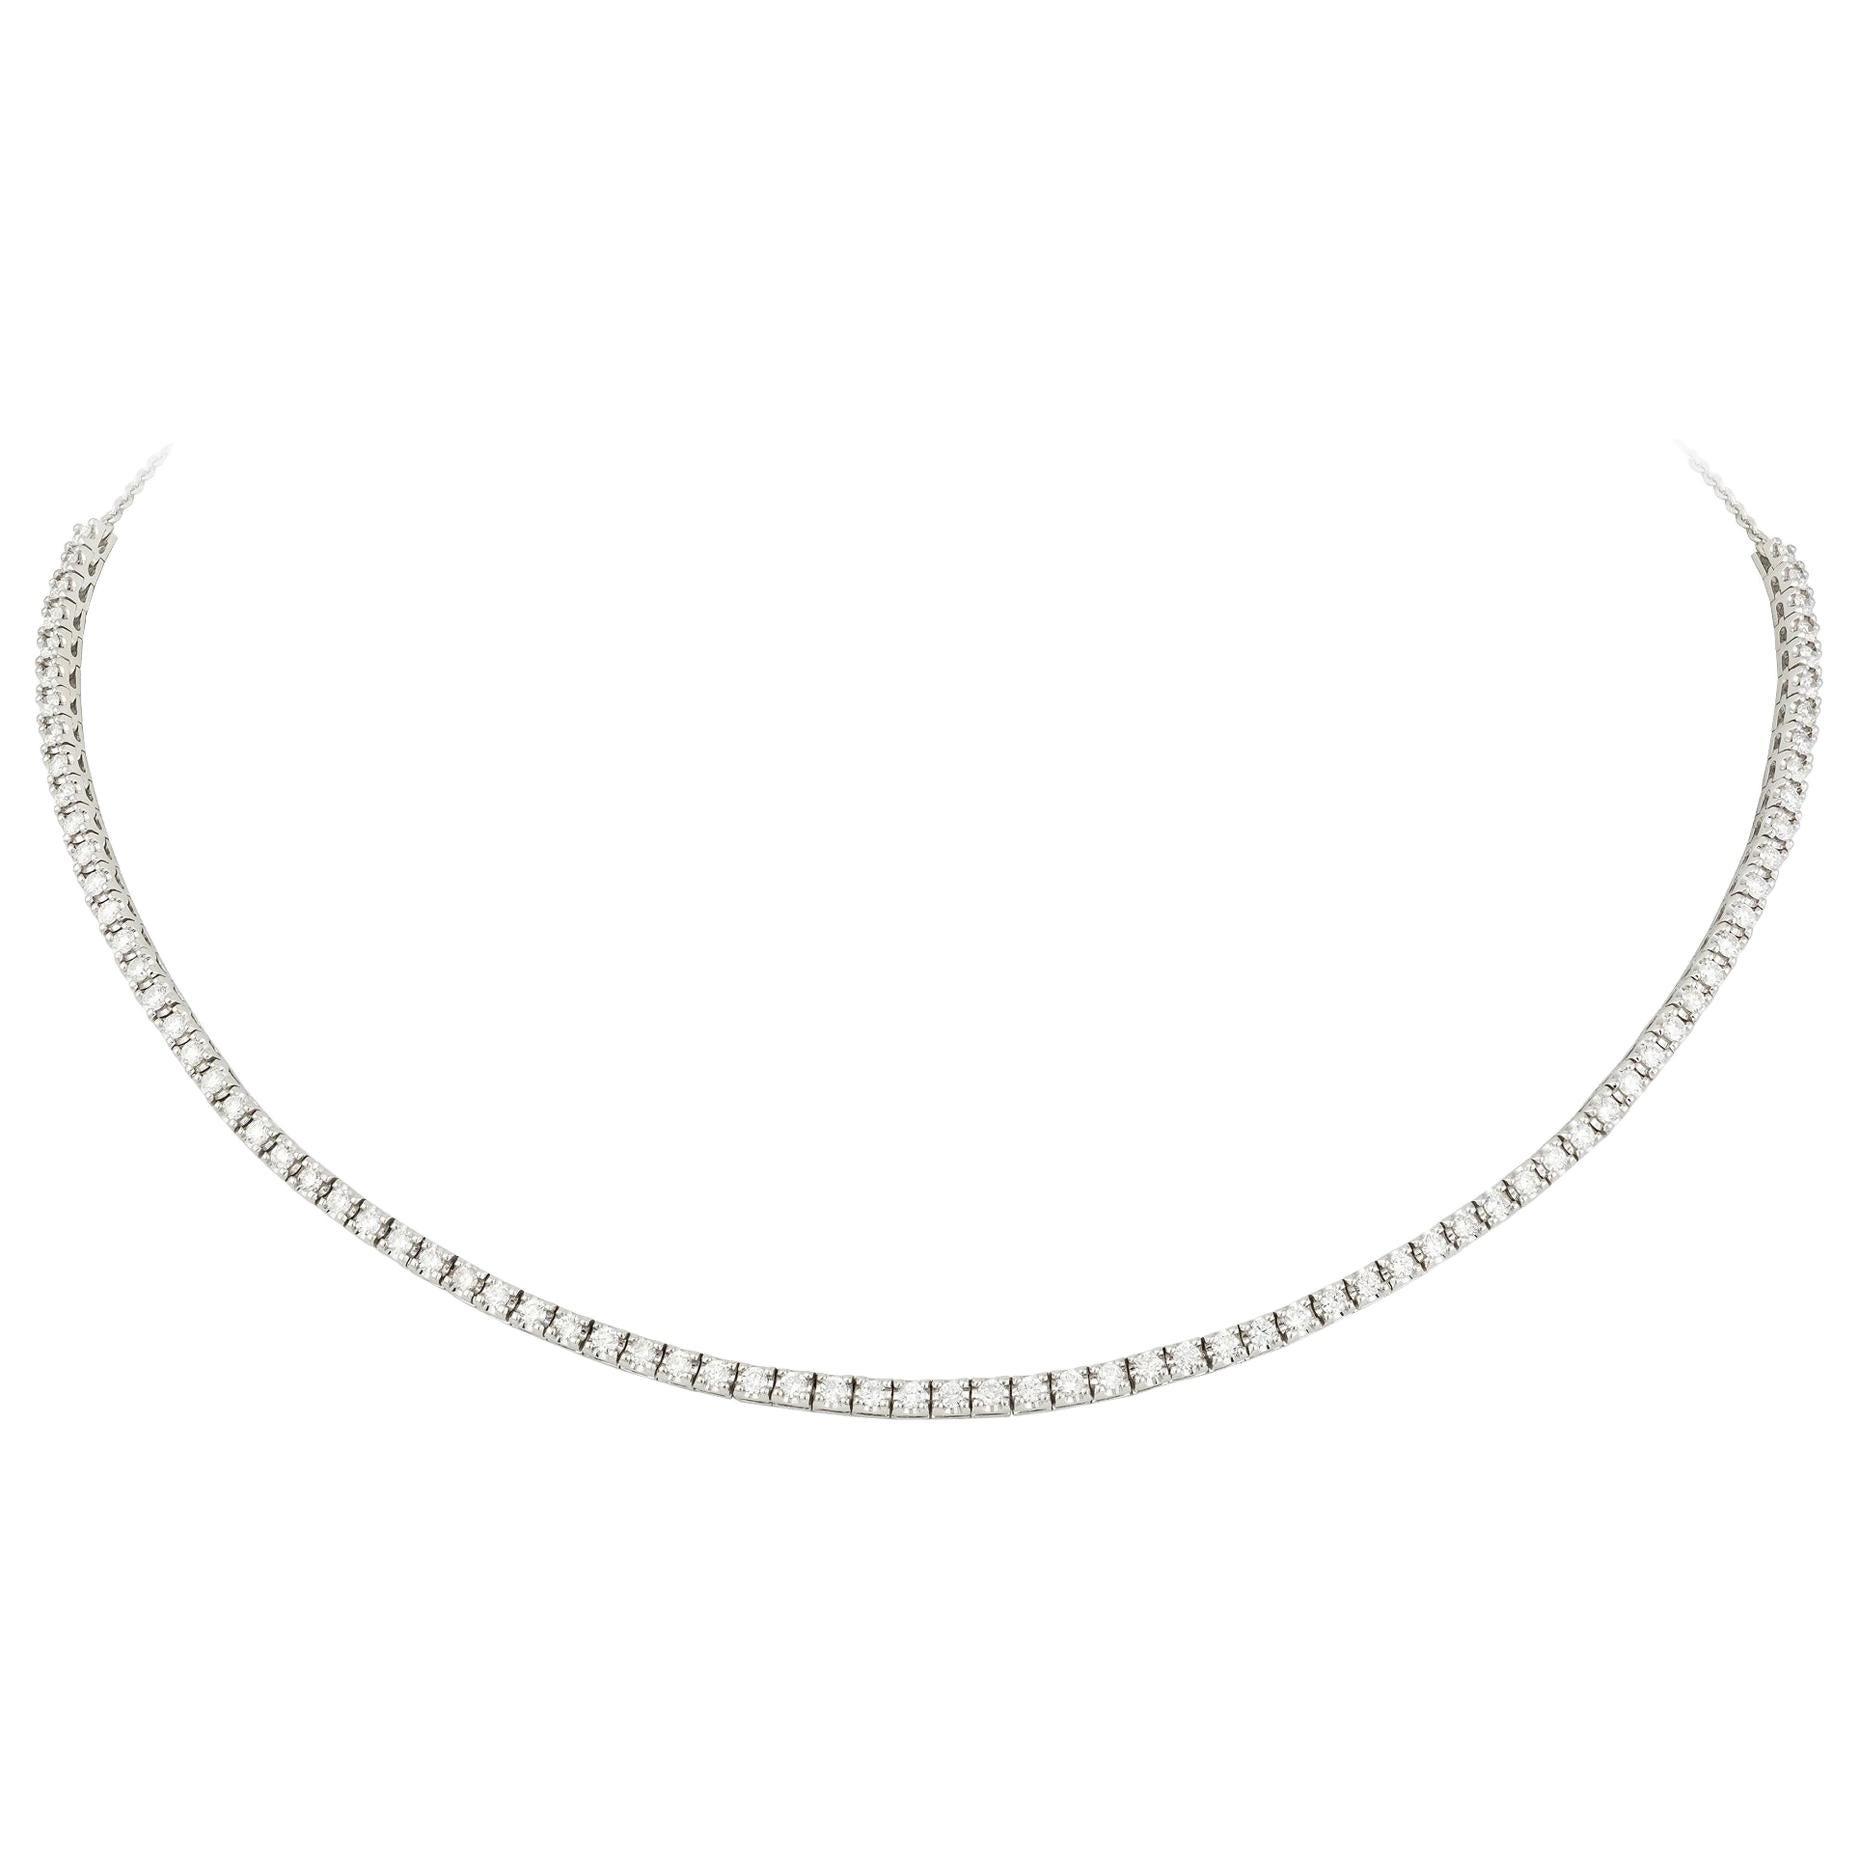 Best Seller Soft Choker / Classic Diamond Necklace 18k White Gold for Her